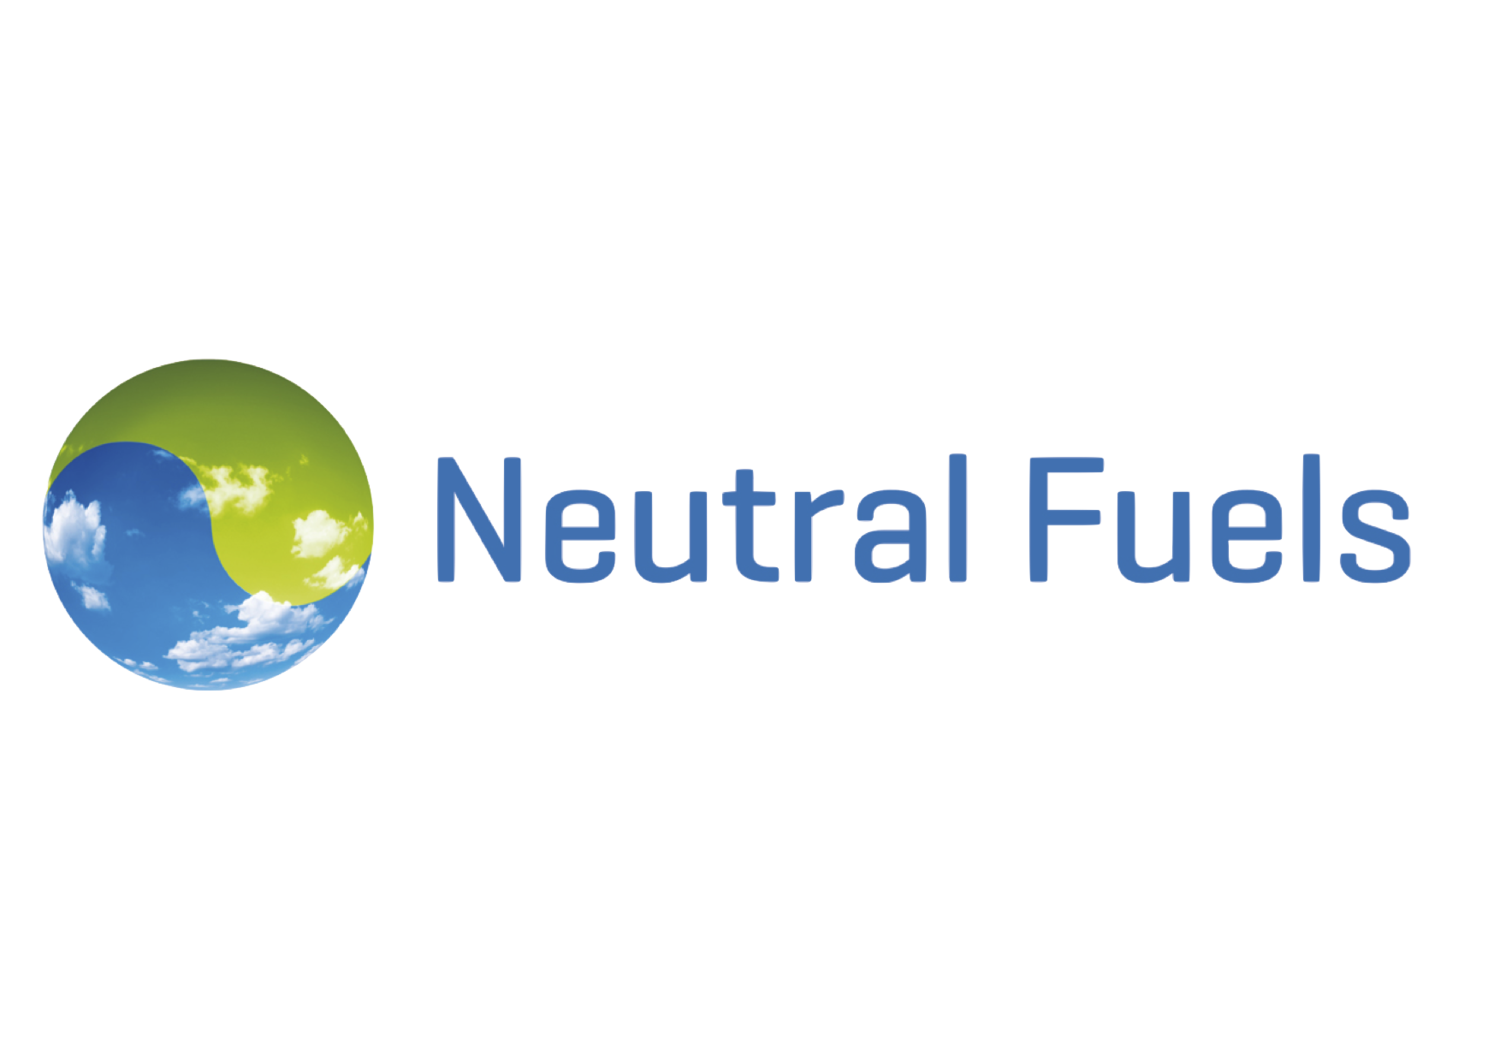 Neutral Fuels